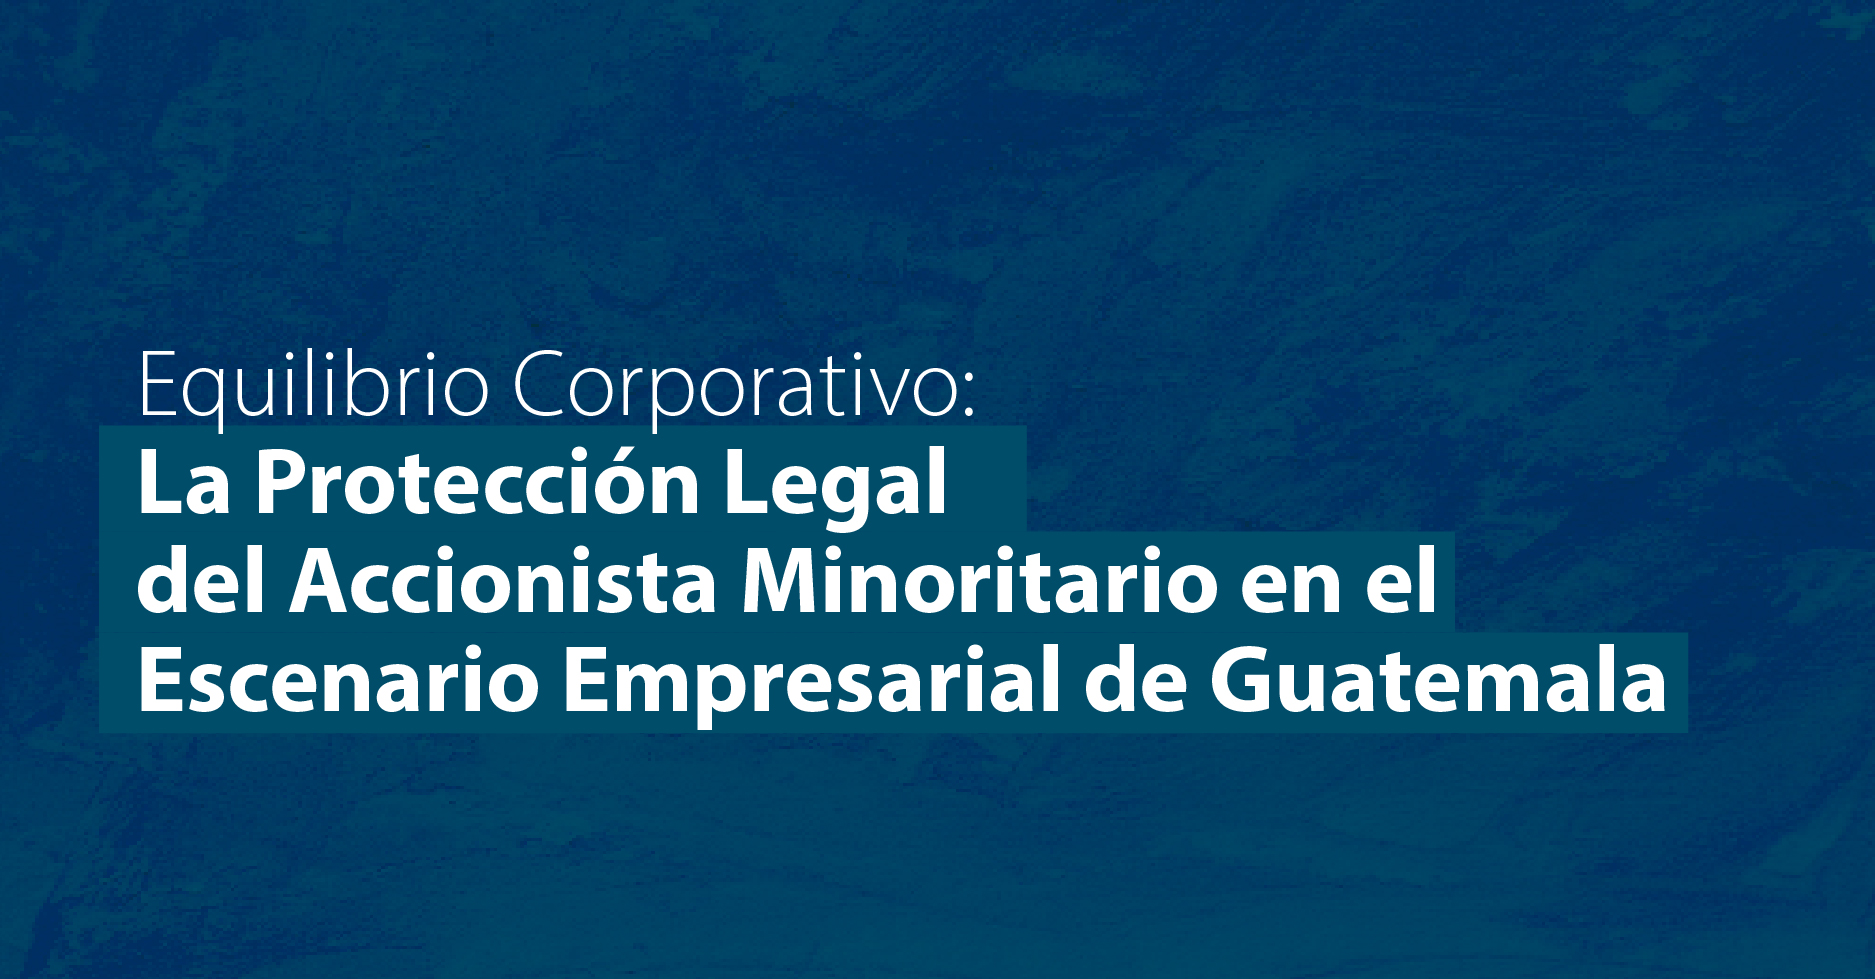 Equilibrio Corporativo: La Protección Legal del Accionista Minoritario en el Escenario Empresarial